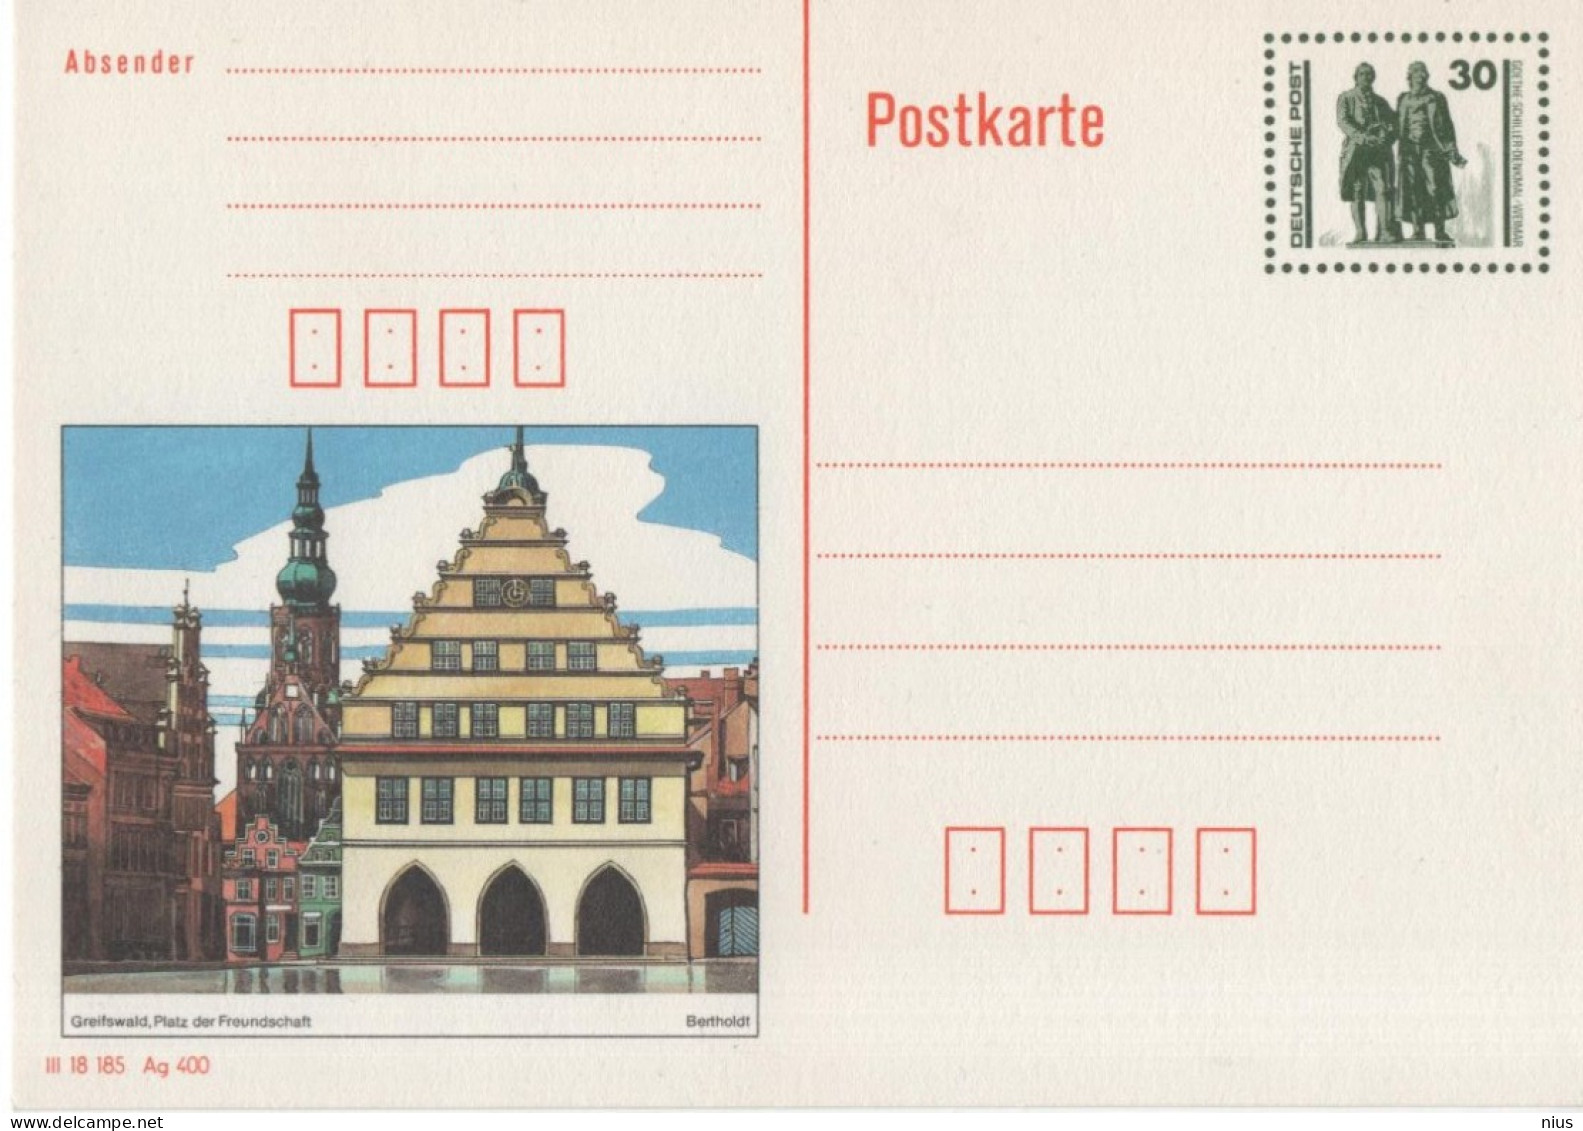 Germany Deutschland DDR 1990 Greifswald, Platz Der Freundschaft, Goethe-Schiller-Denkmal Weimar - Postcards - Mint